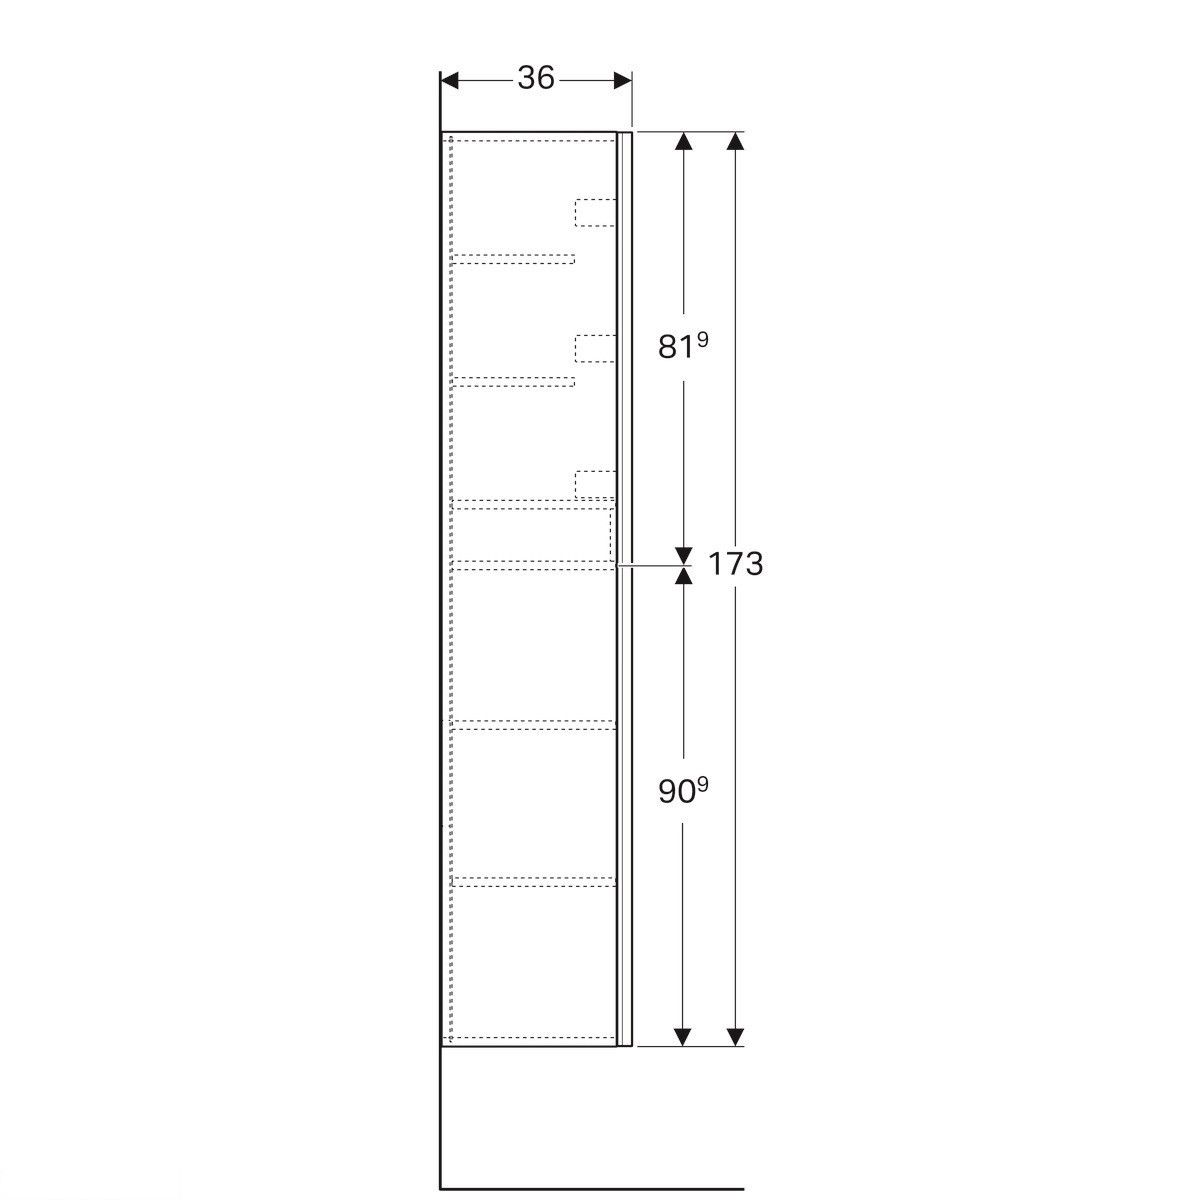 Высокий шкаф Geberit Acanto с двумя дверцами: корпус: лакированый матовый/ лава, фасад: стекло лава 500.619.JK.2